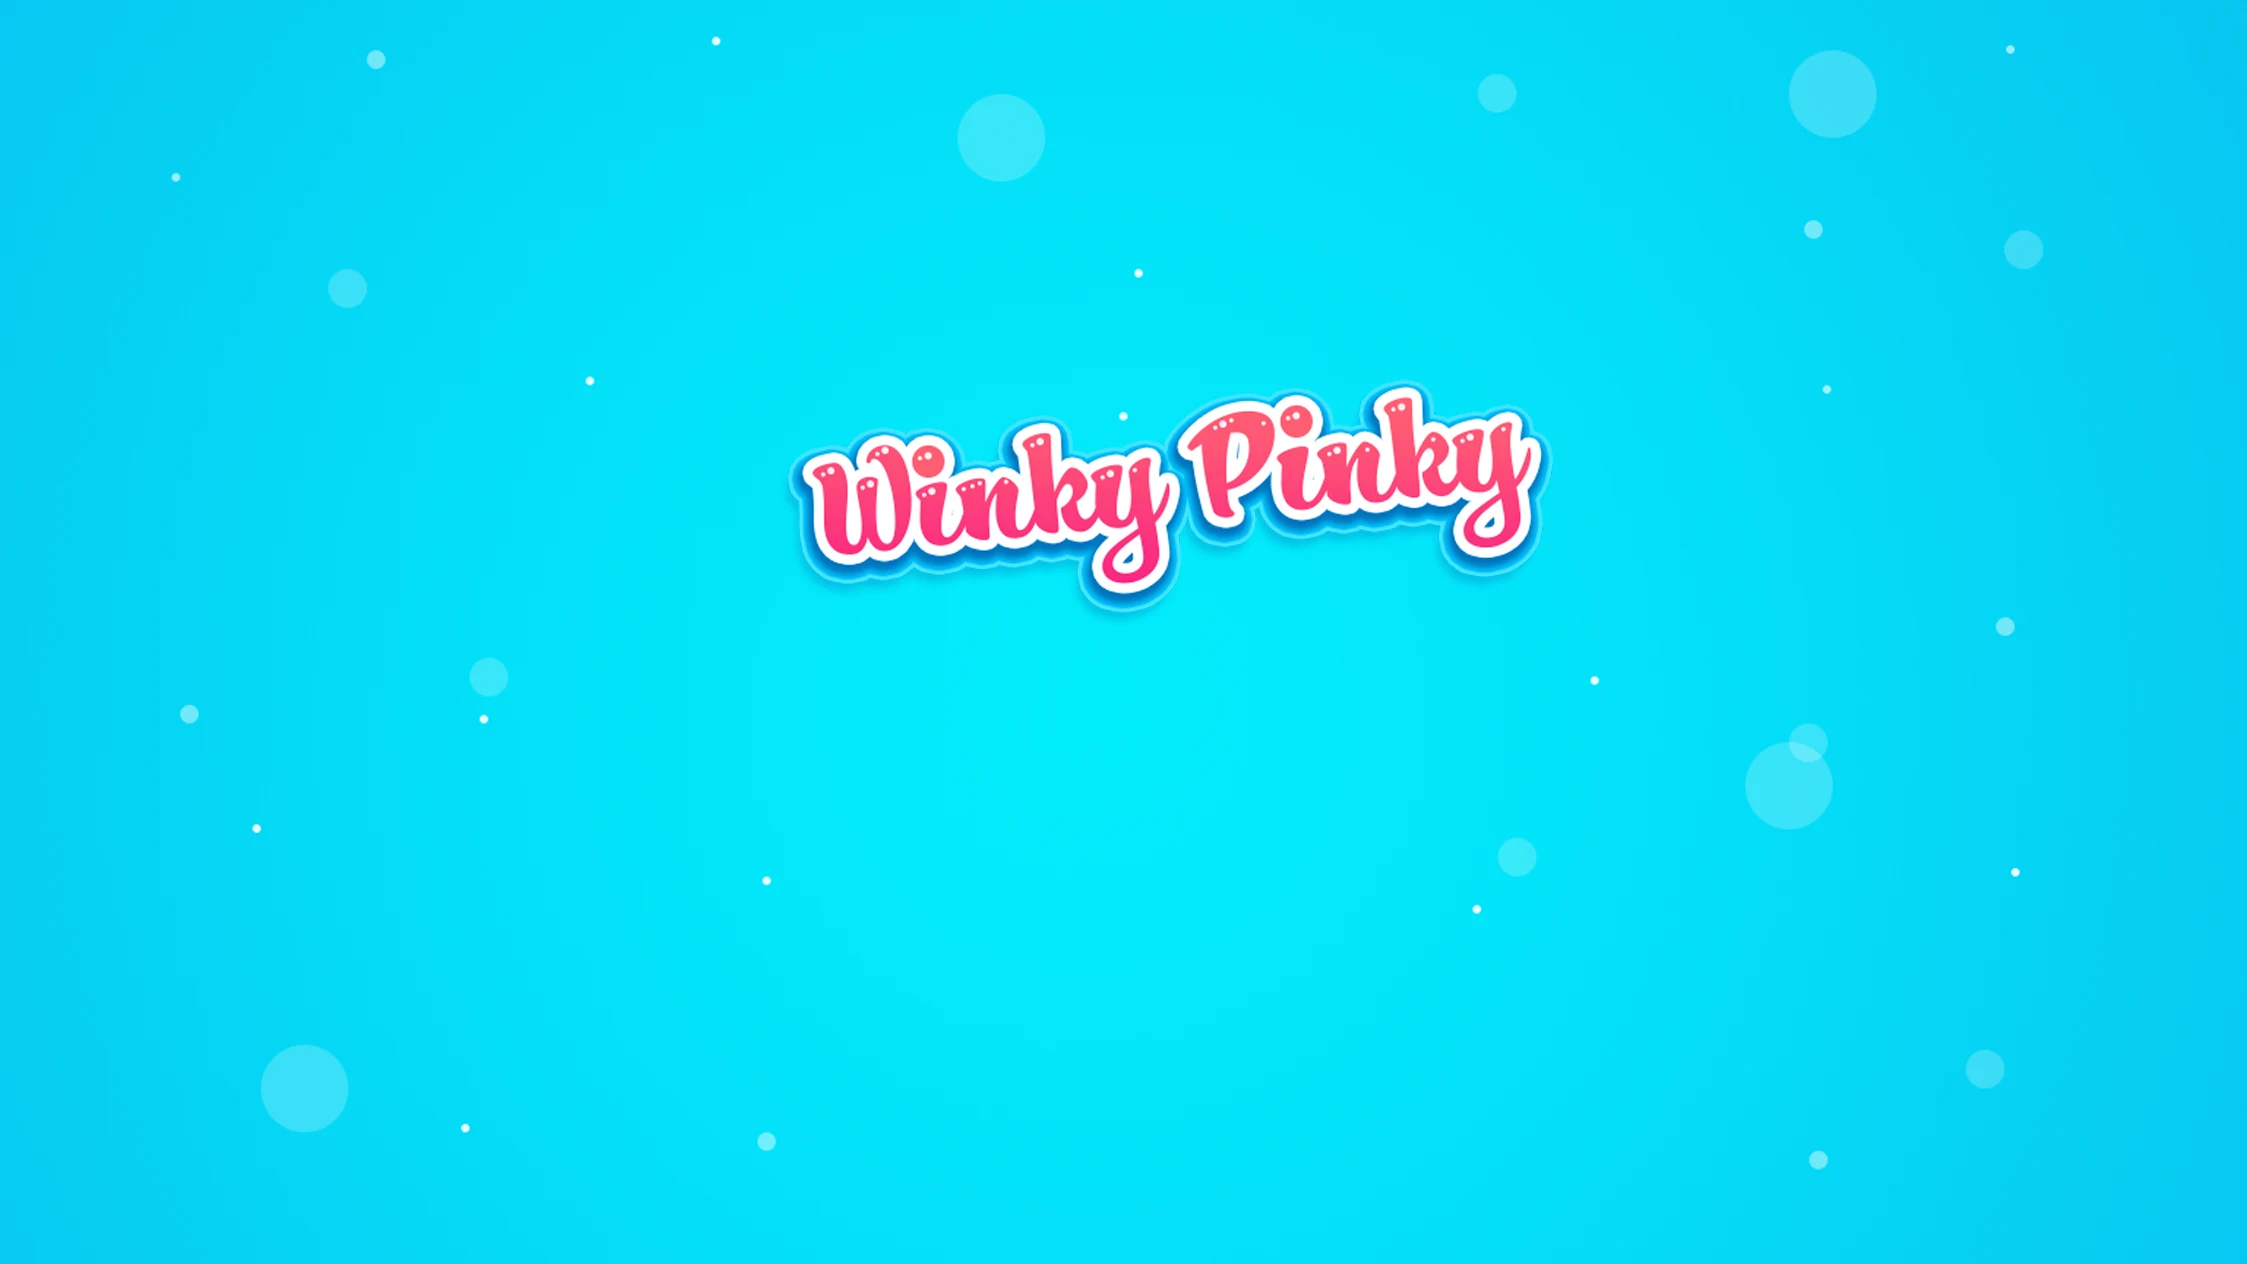 winkypinky